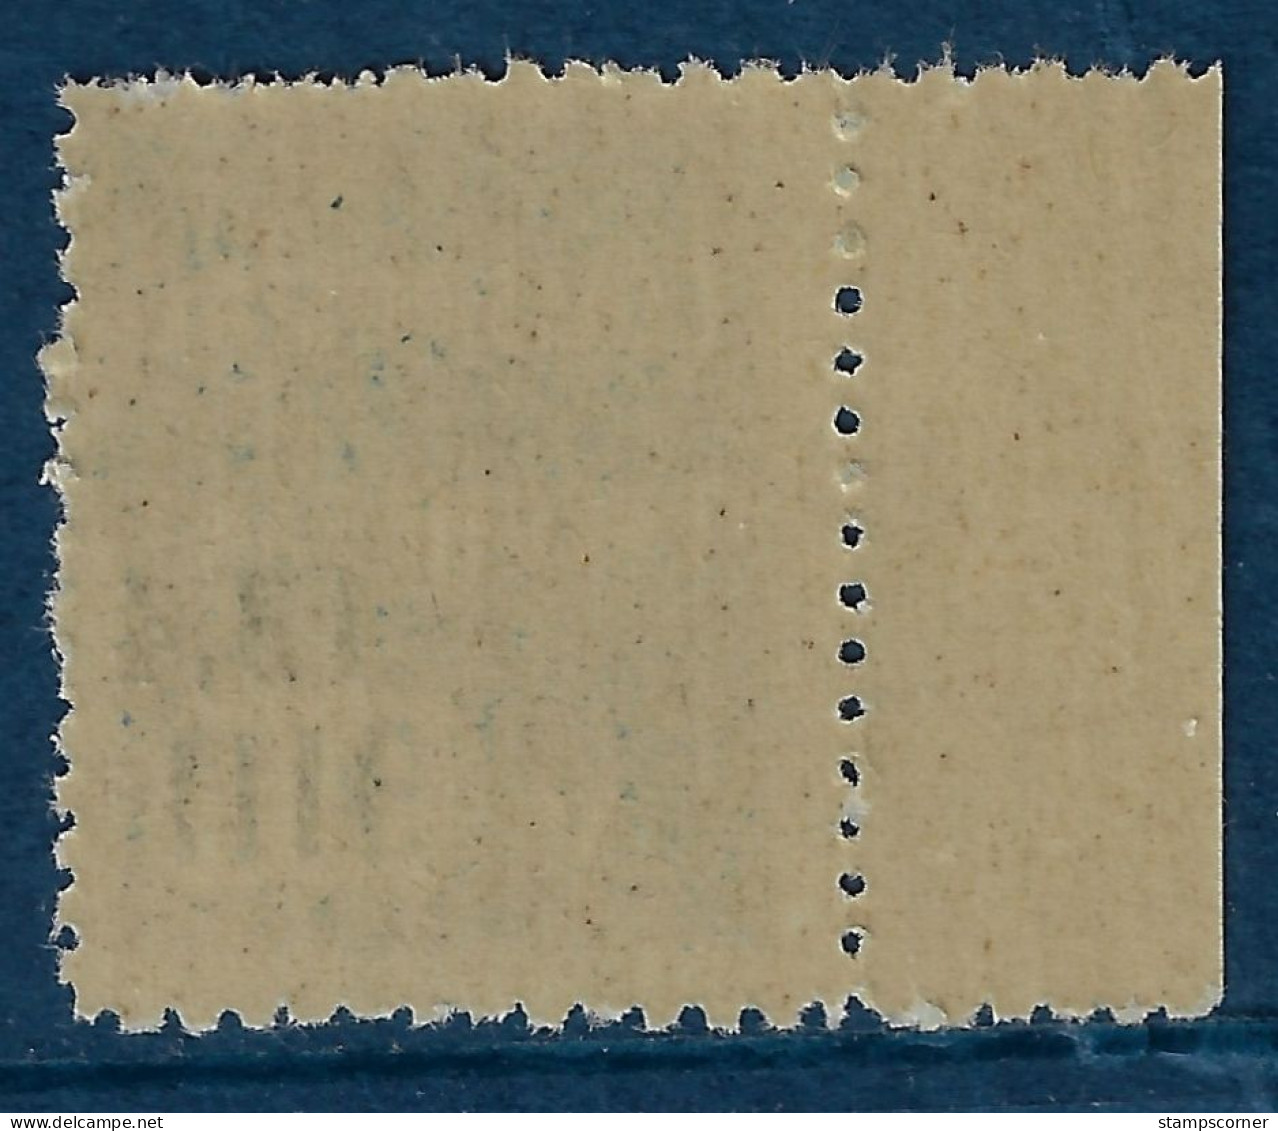 Colis Postal 148a ** Neuf Sans Charnière (scan Recto / Verso) - Parcel Post